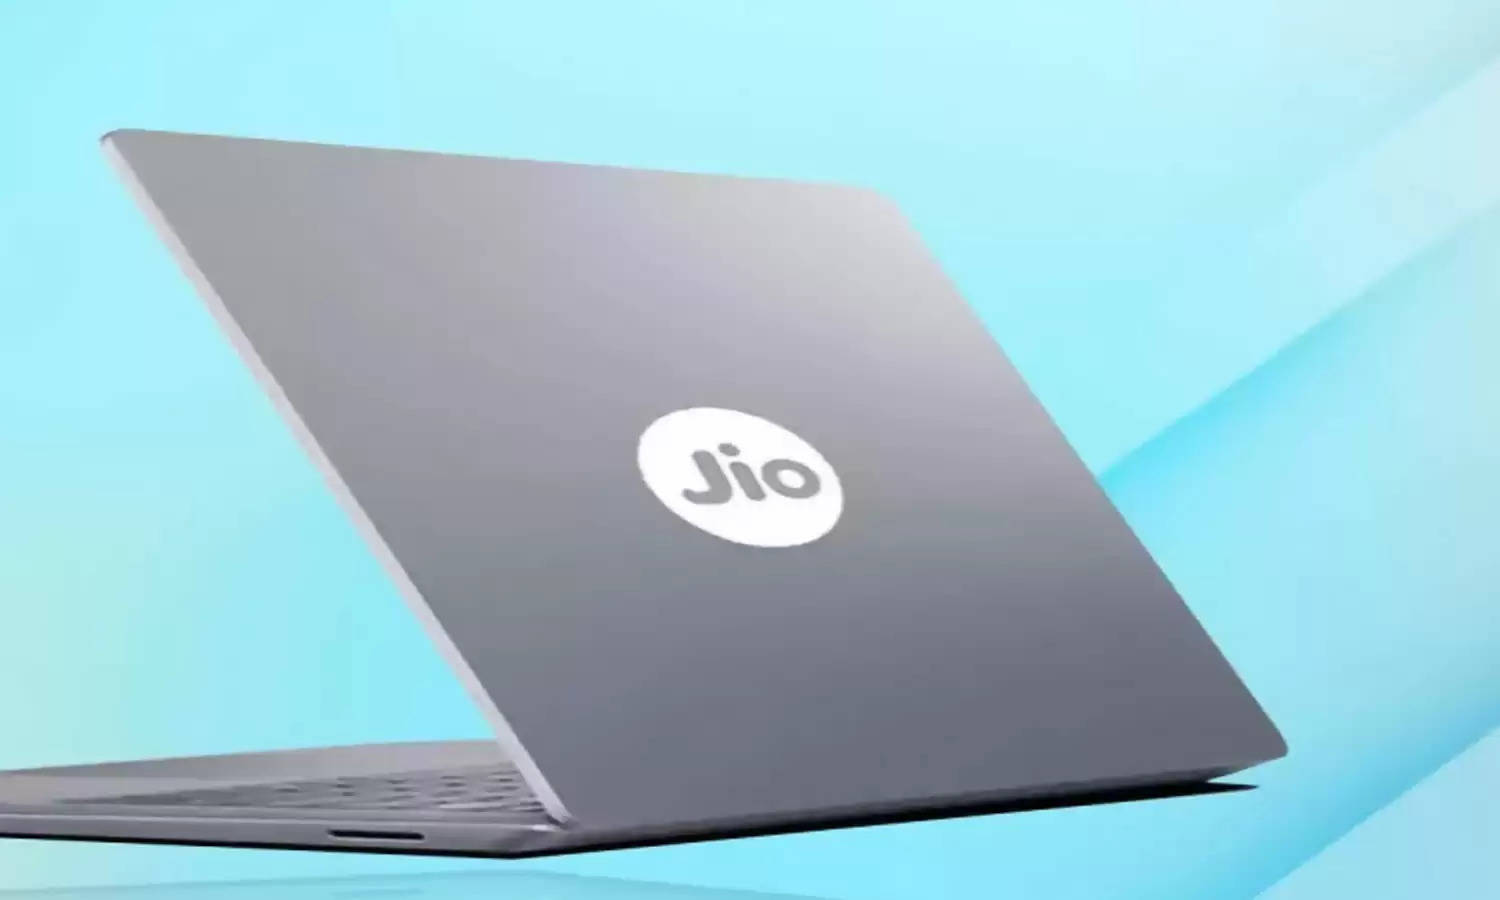 Jio के सस्ते लैपटॉप में होगी होश उड़ाने वाली खूबियां, लॉन्च से पहले फटाफट जान लें